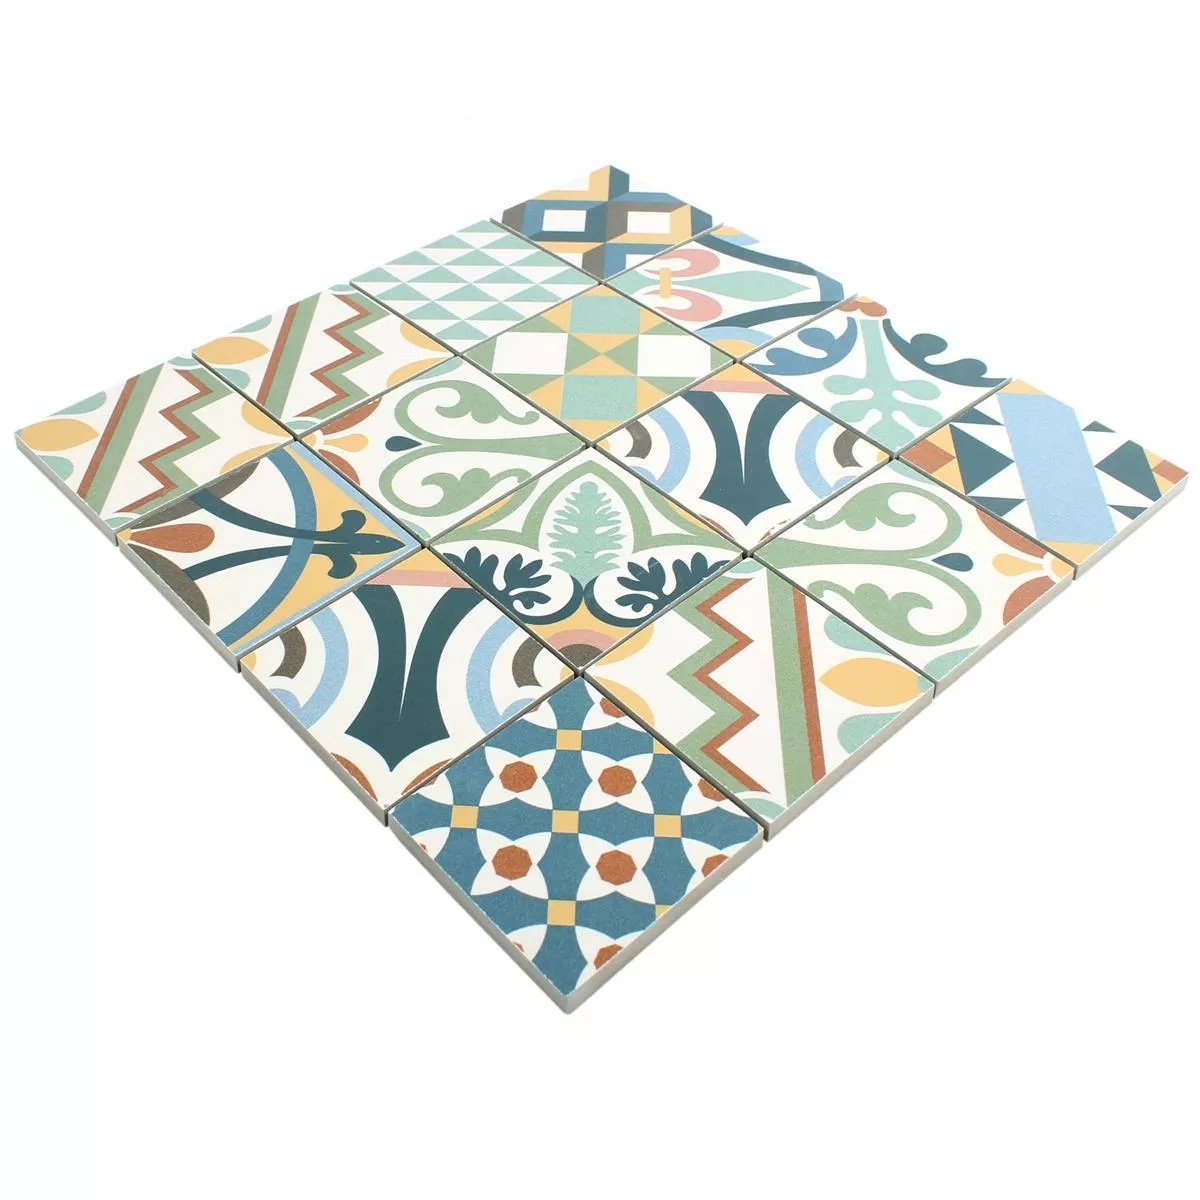 Campione Ceramica Mosaico Retro Piastrelle Utopia Colorato R10/B